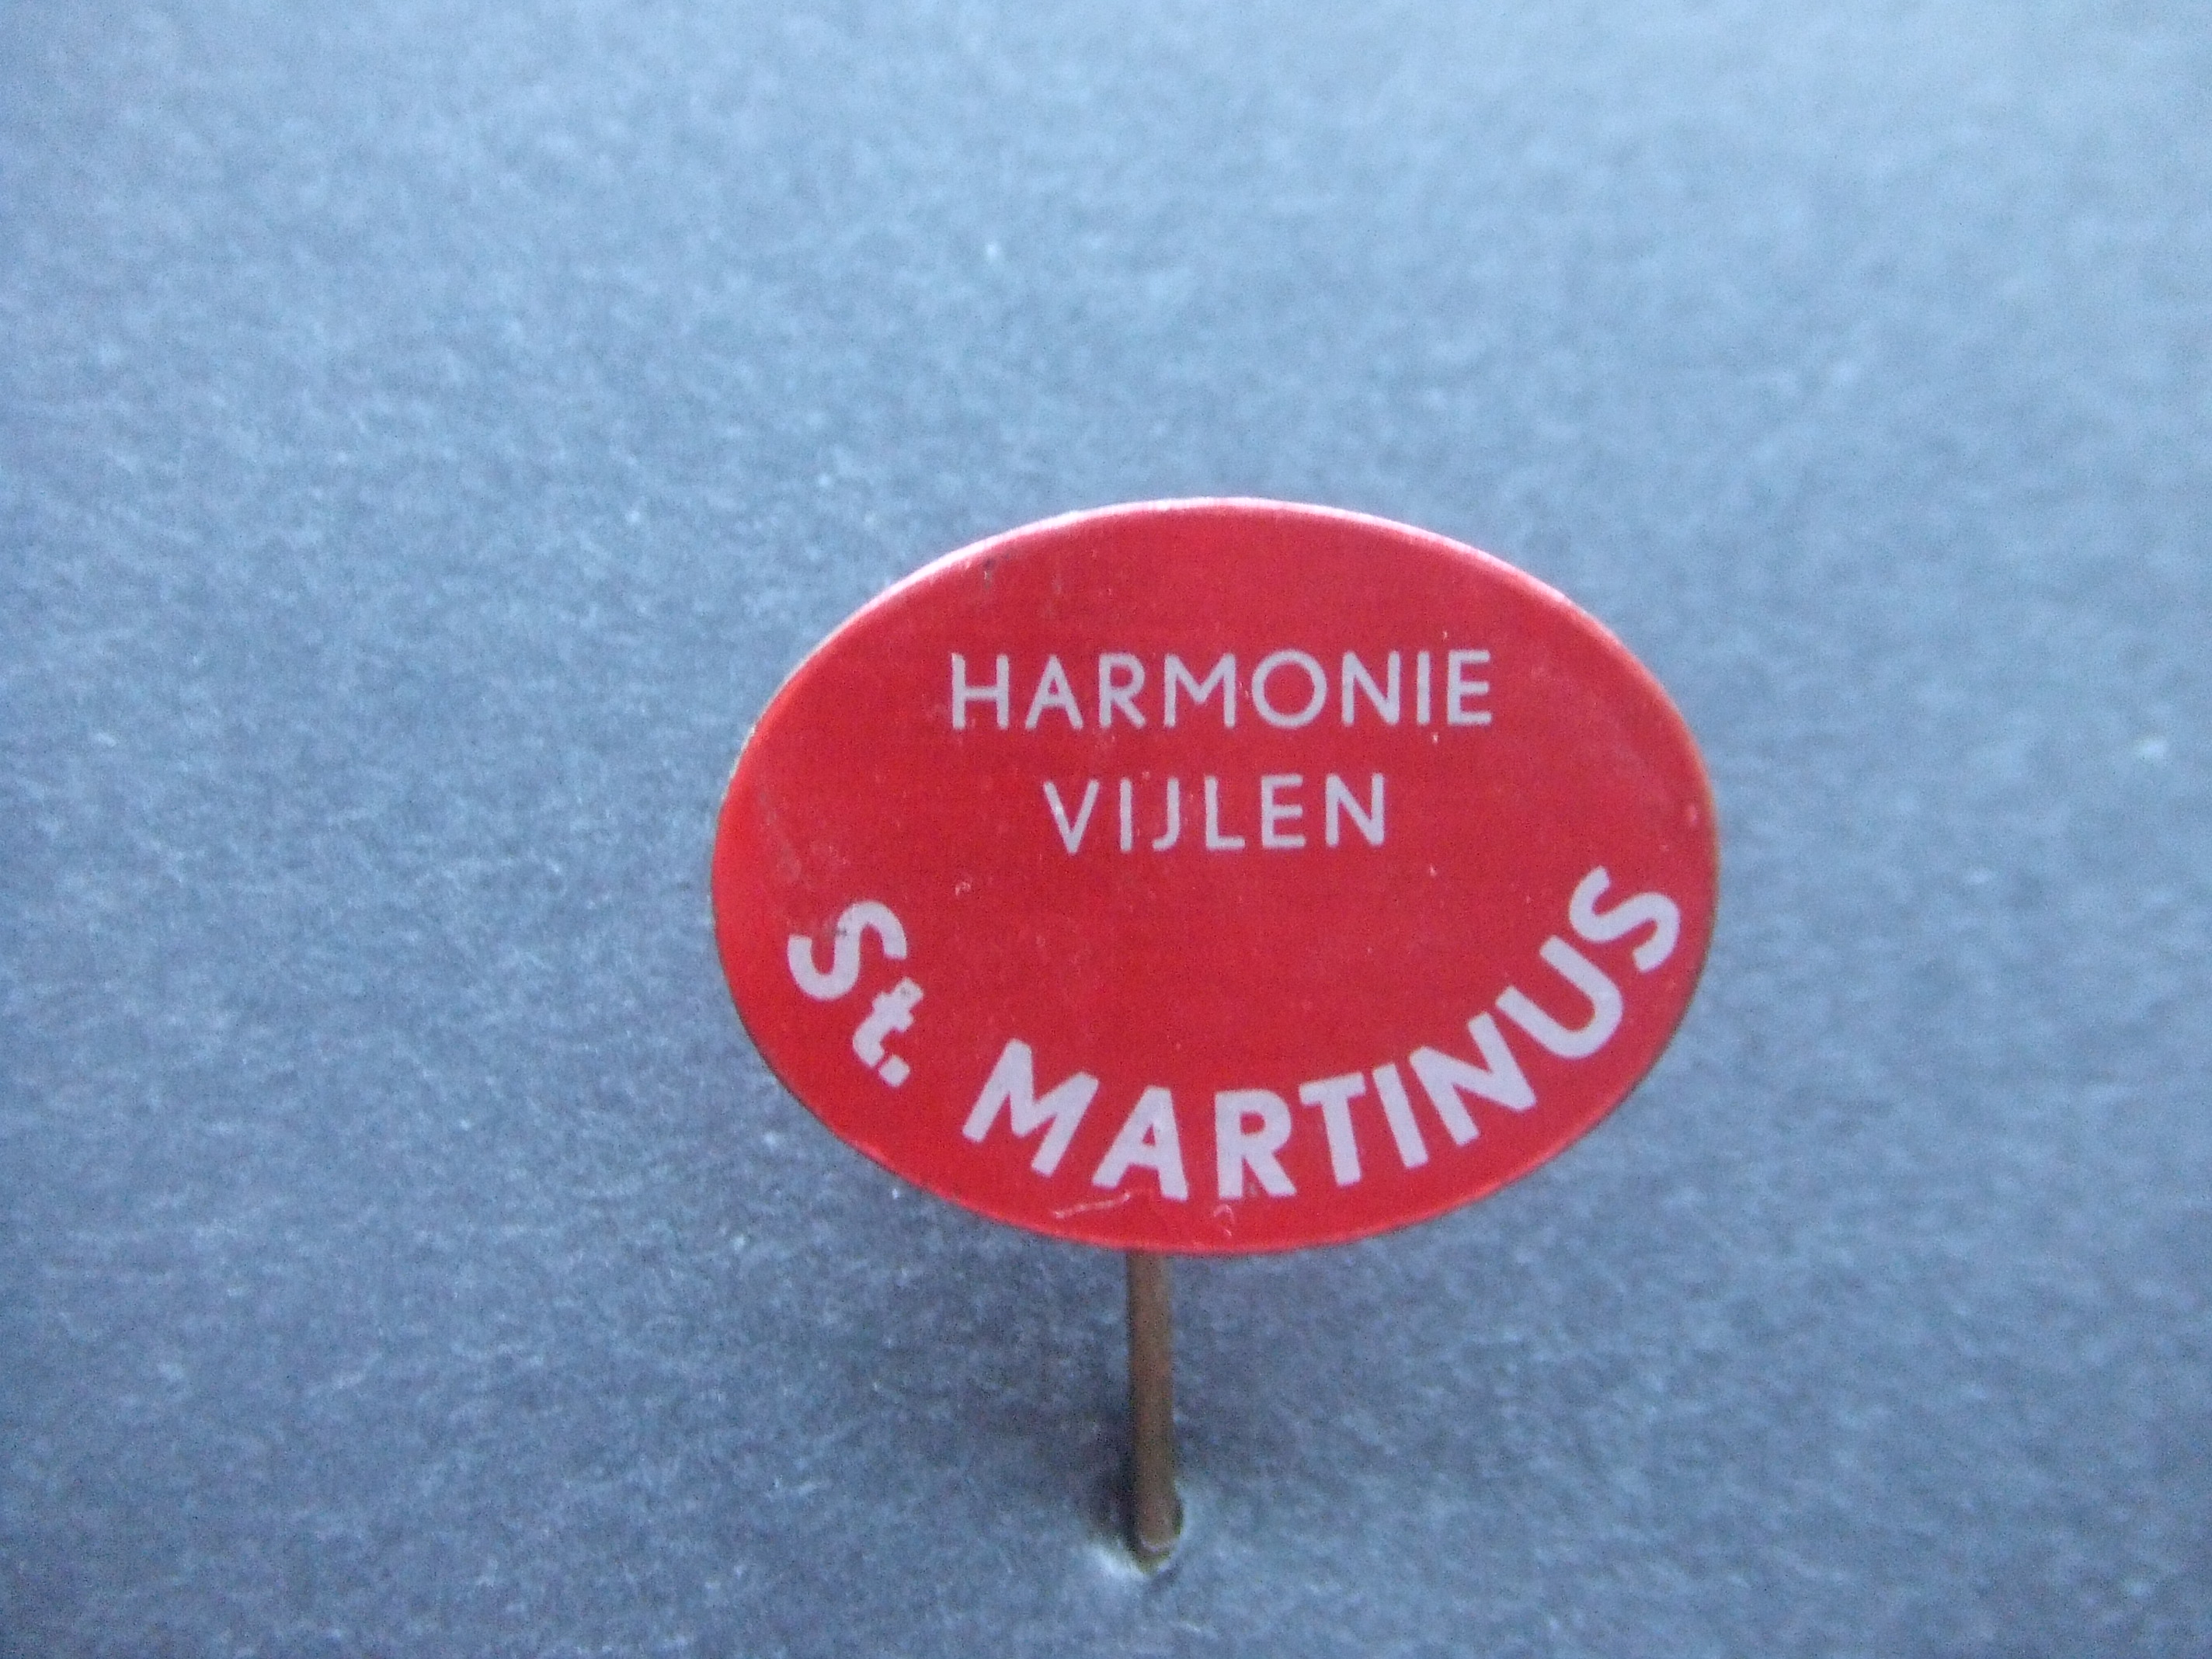 Harmonie St. Martinus Vijlen gemeente Vaals Limburg